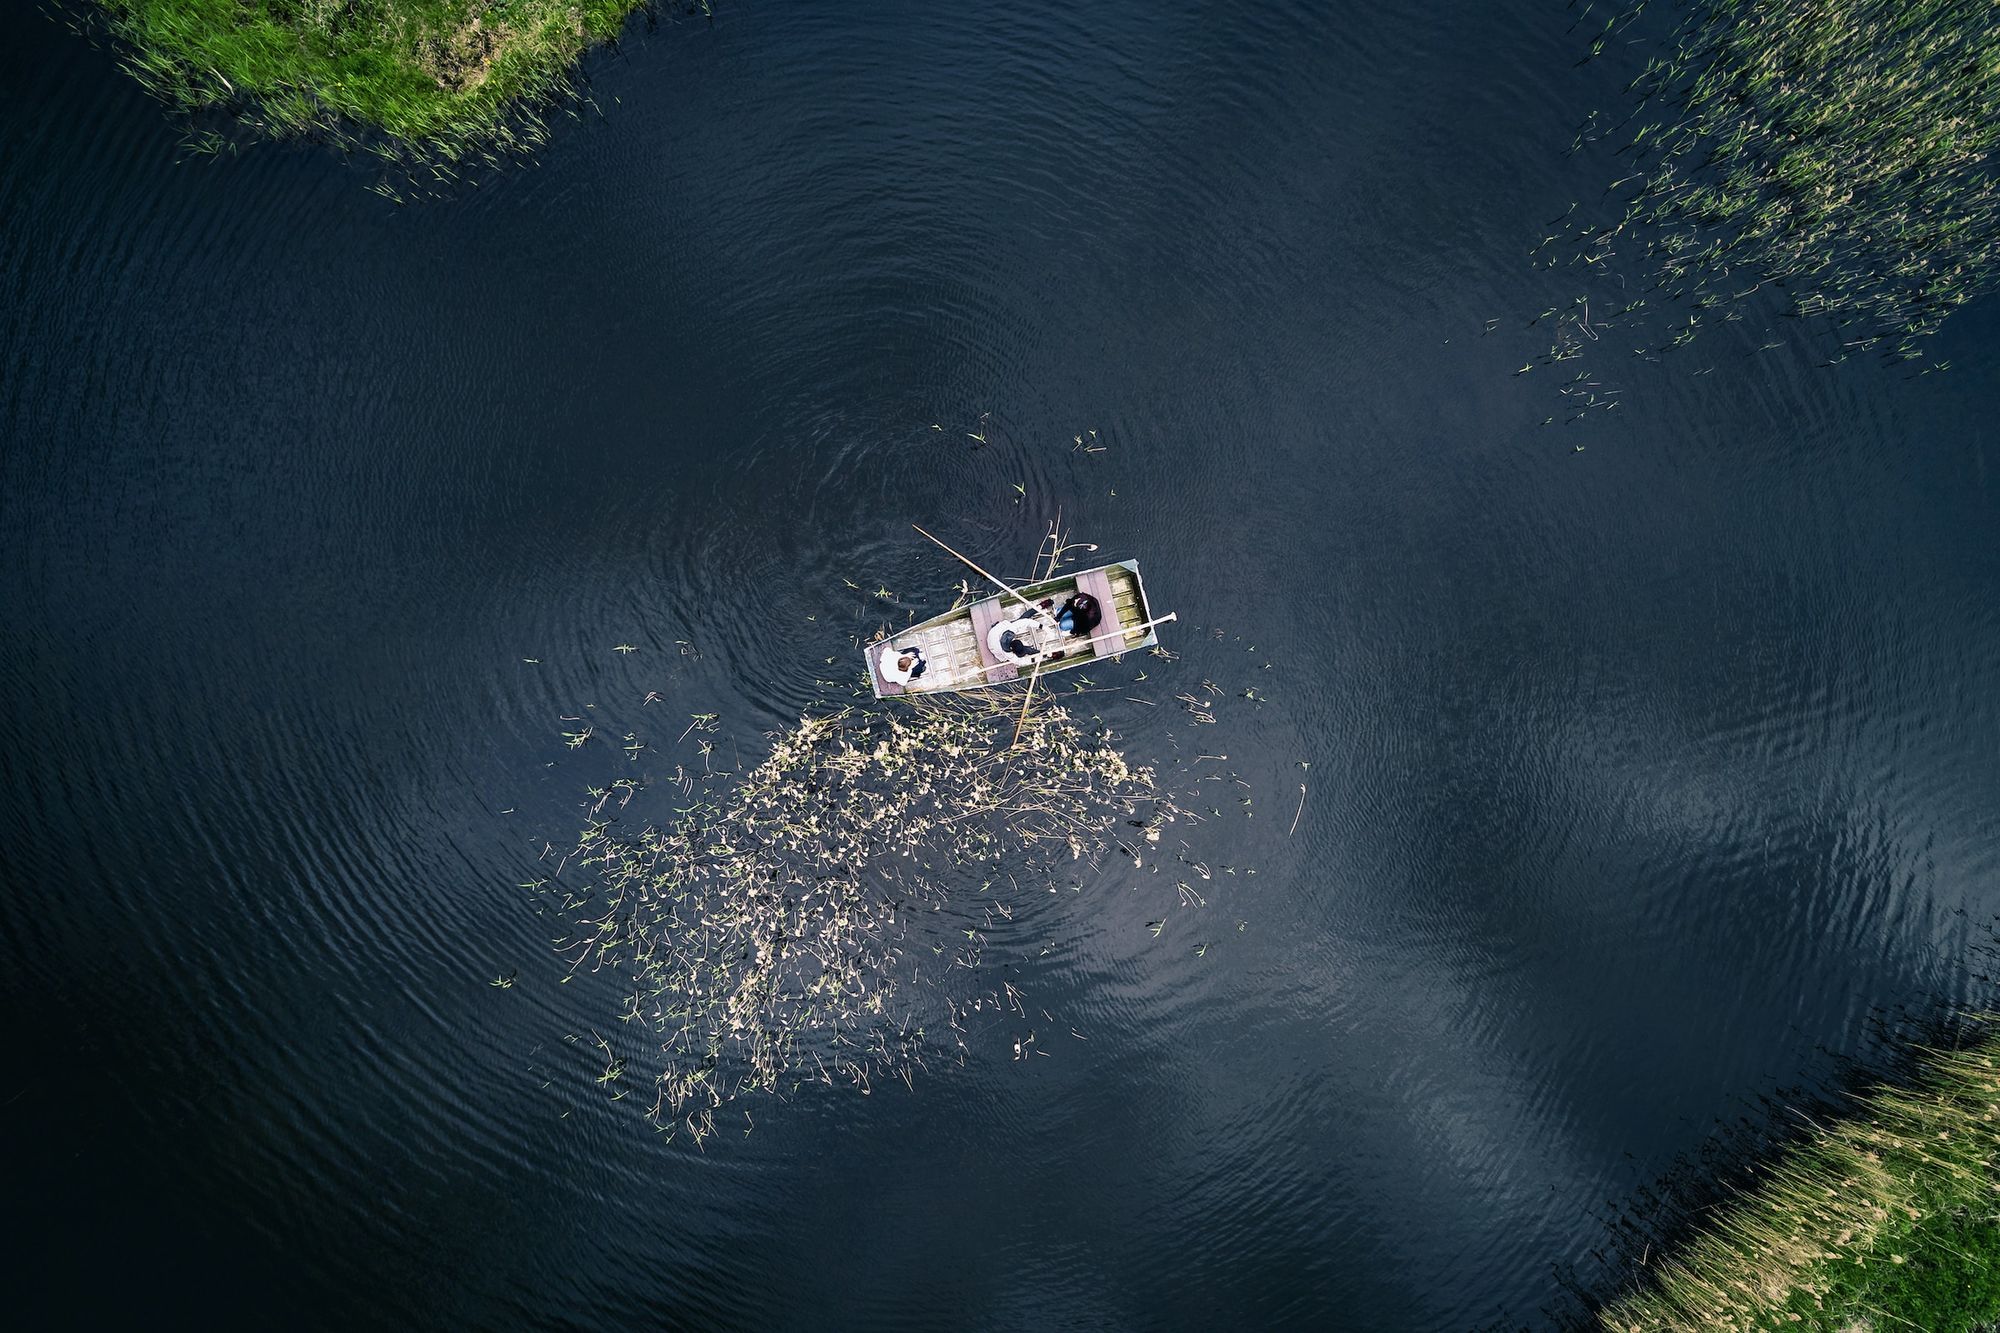 Ruderboot auf einem See